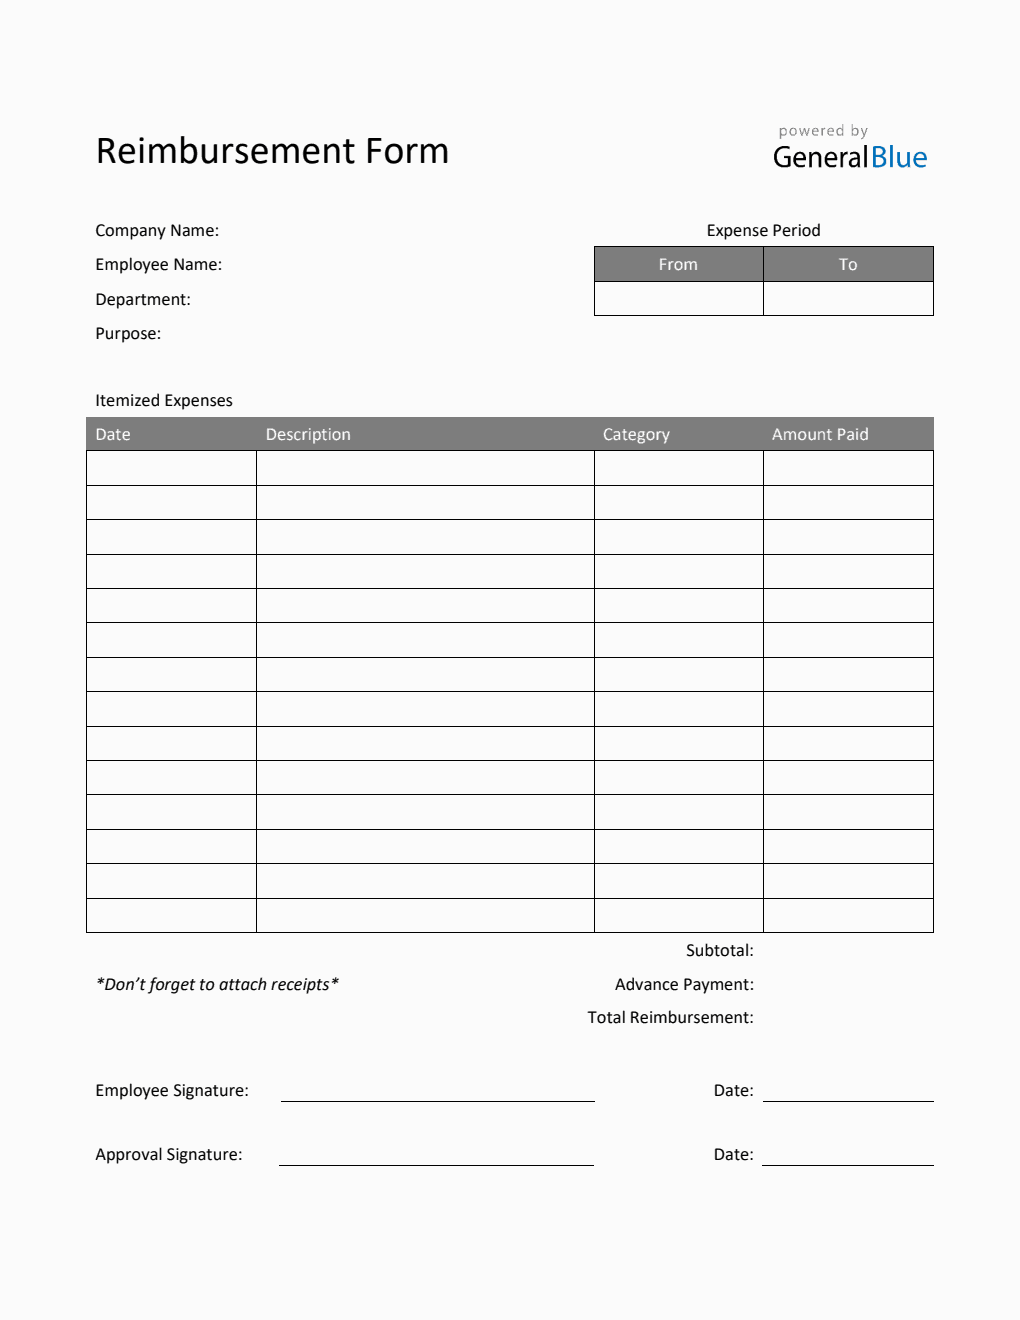 Reimbursement Form in PDF (Striped)